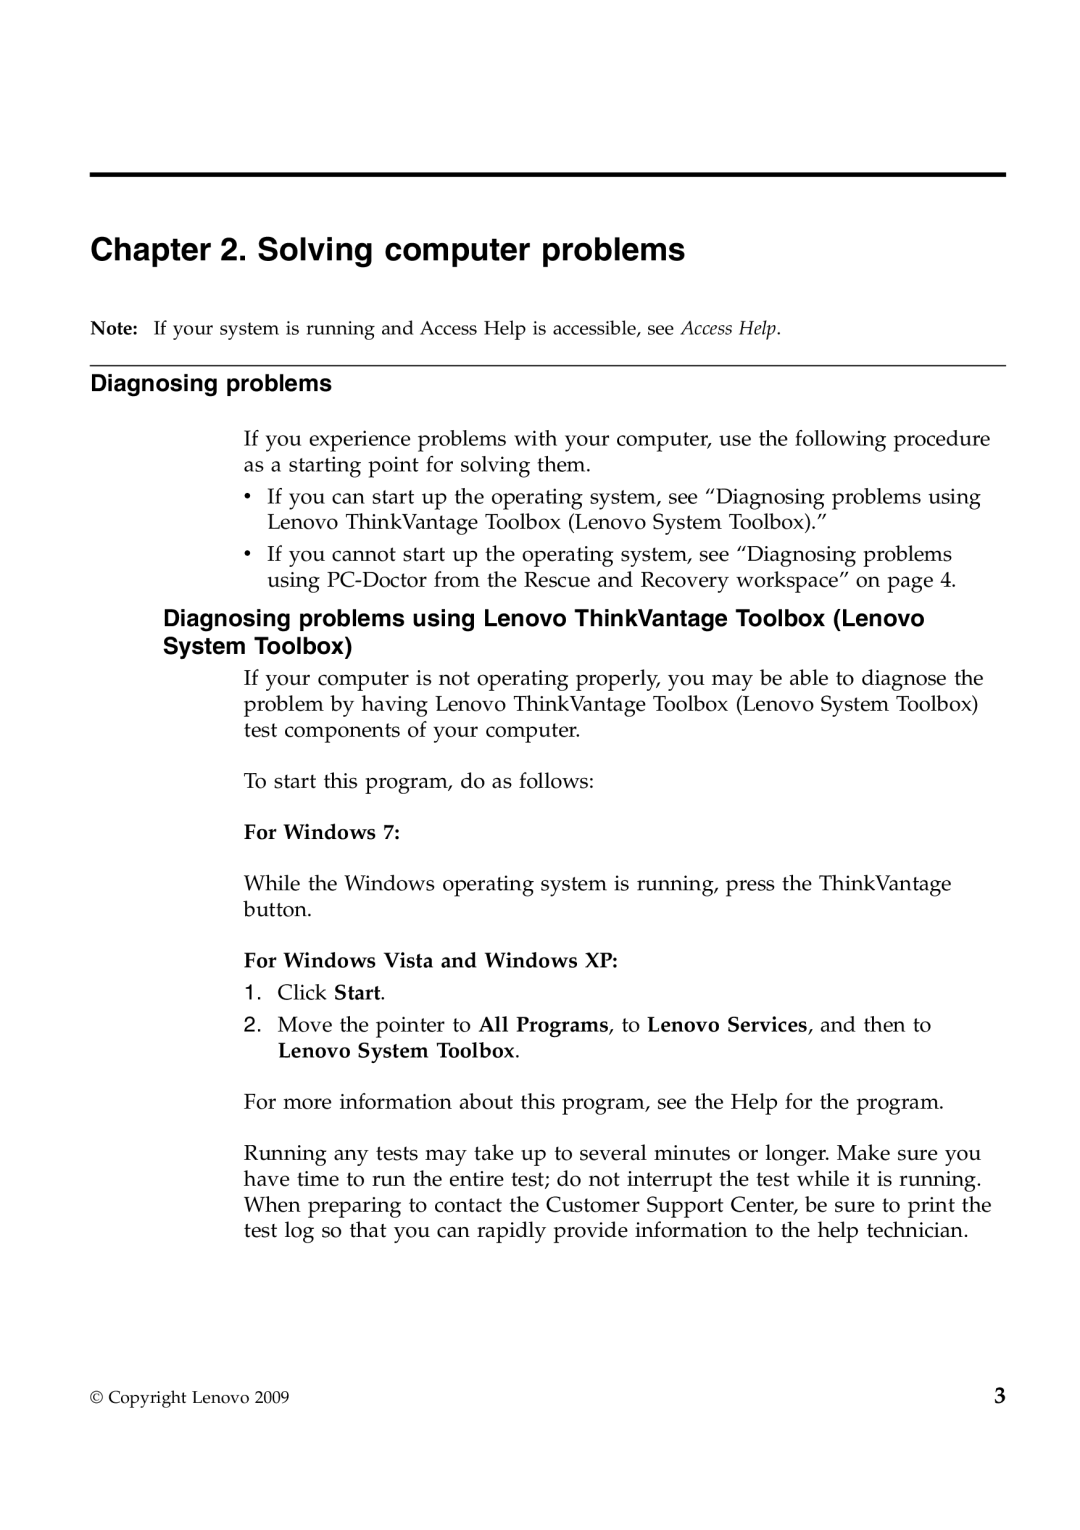 Lenovo 309324U, X201S, 311396U, 309392U Solving computer problems, Diagnosing problems, For Windows Vista and Windows XP 